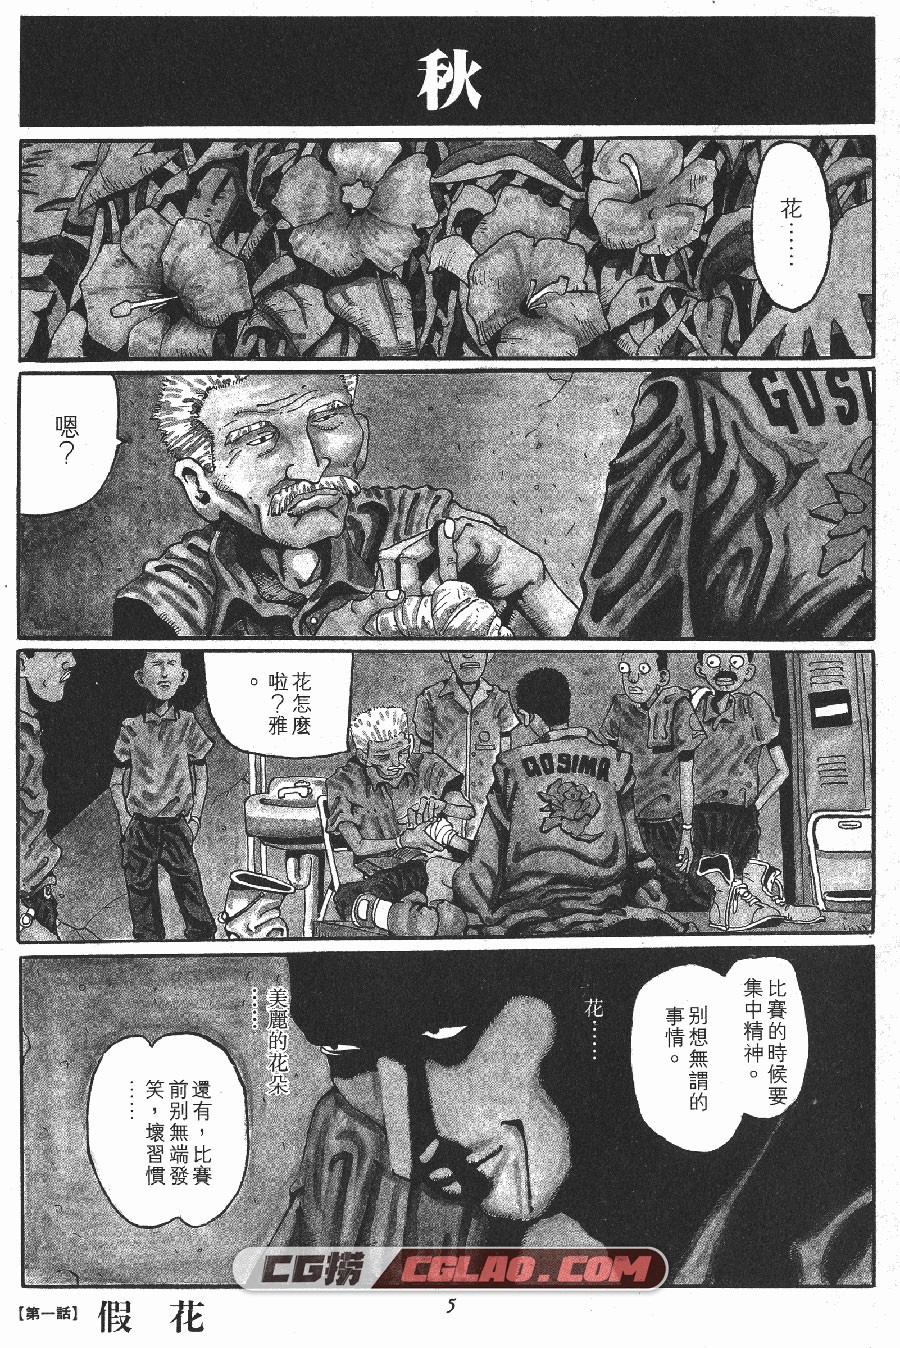 ZERO 松本大洋 1-2卷 漫画完结全集下载 百度网盘,_ZERO01-_0003.jpg